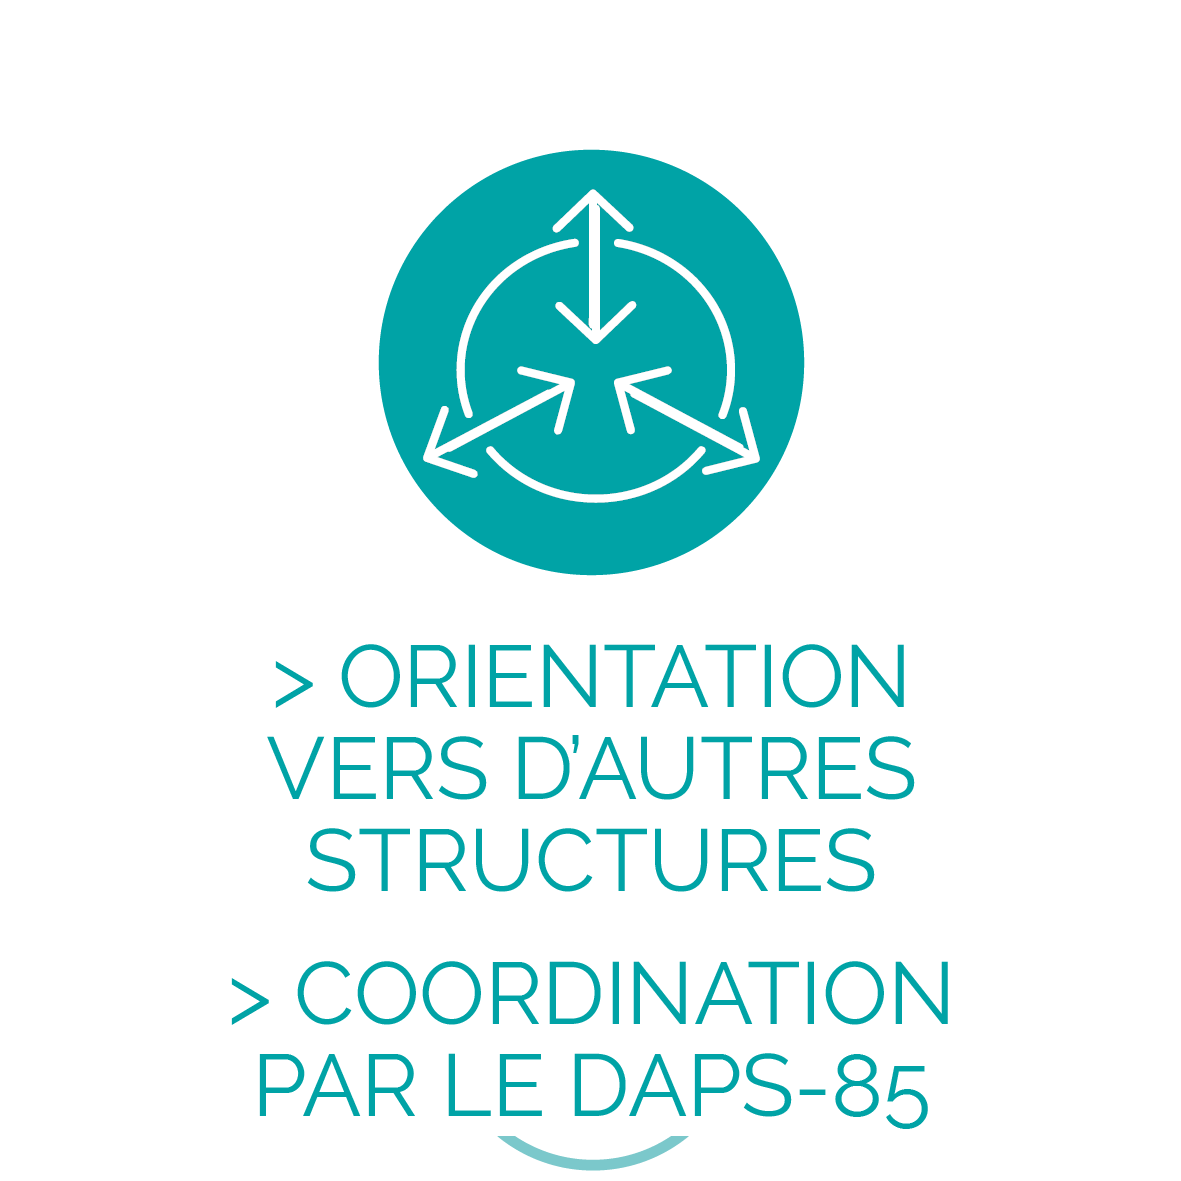 https://daps-85.fr/wp-content/uploads/2021/01/Orientation-et-coordination.png